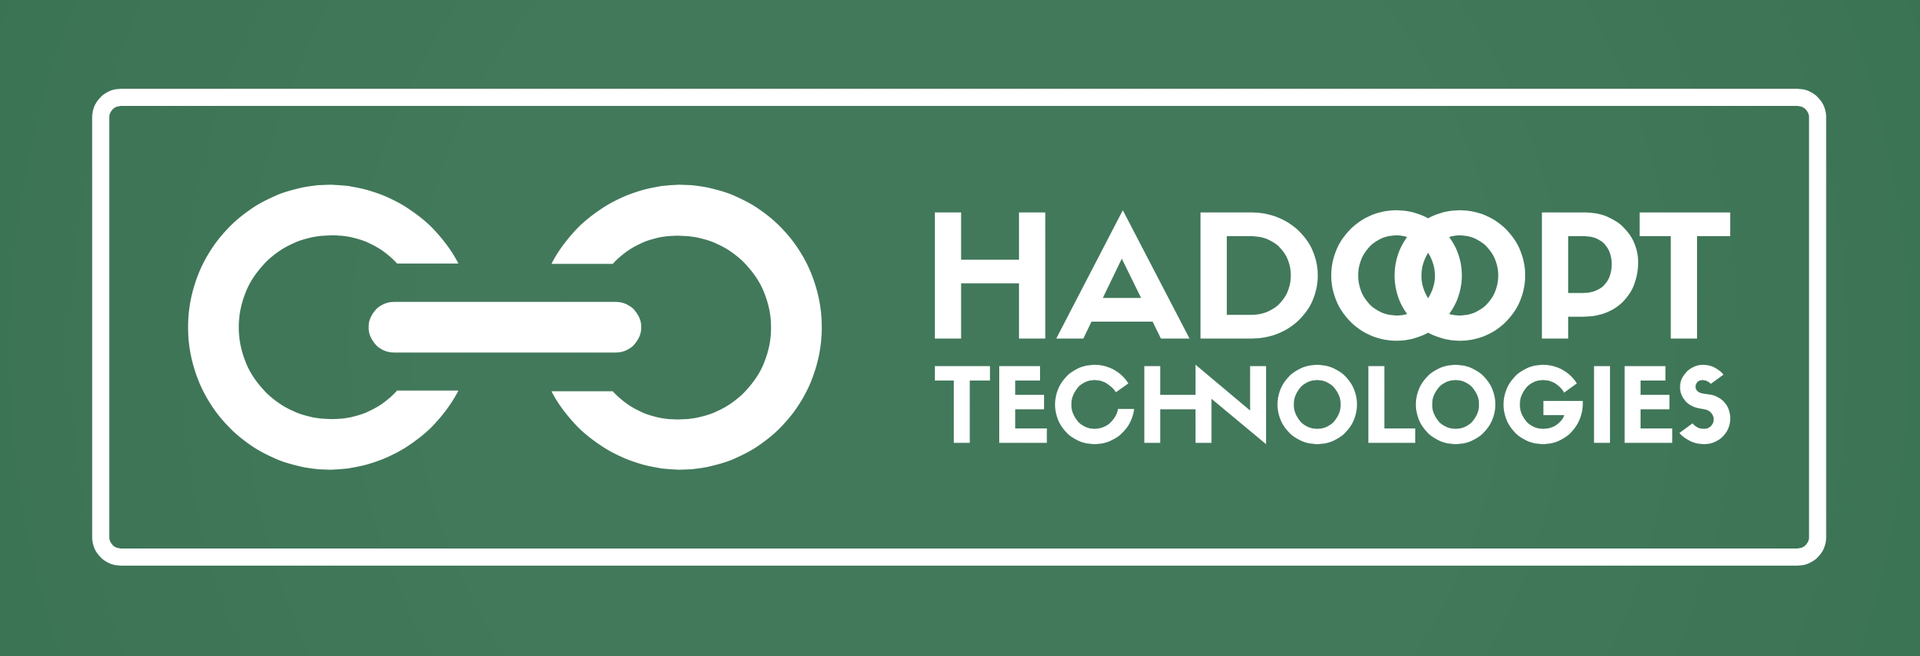 Hadoopt Technologies